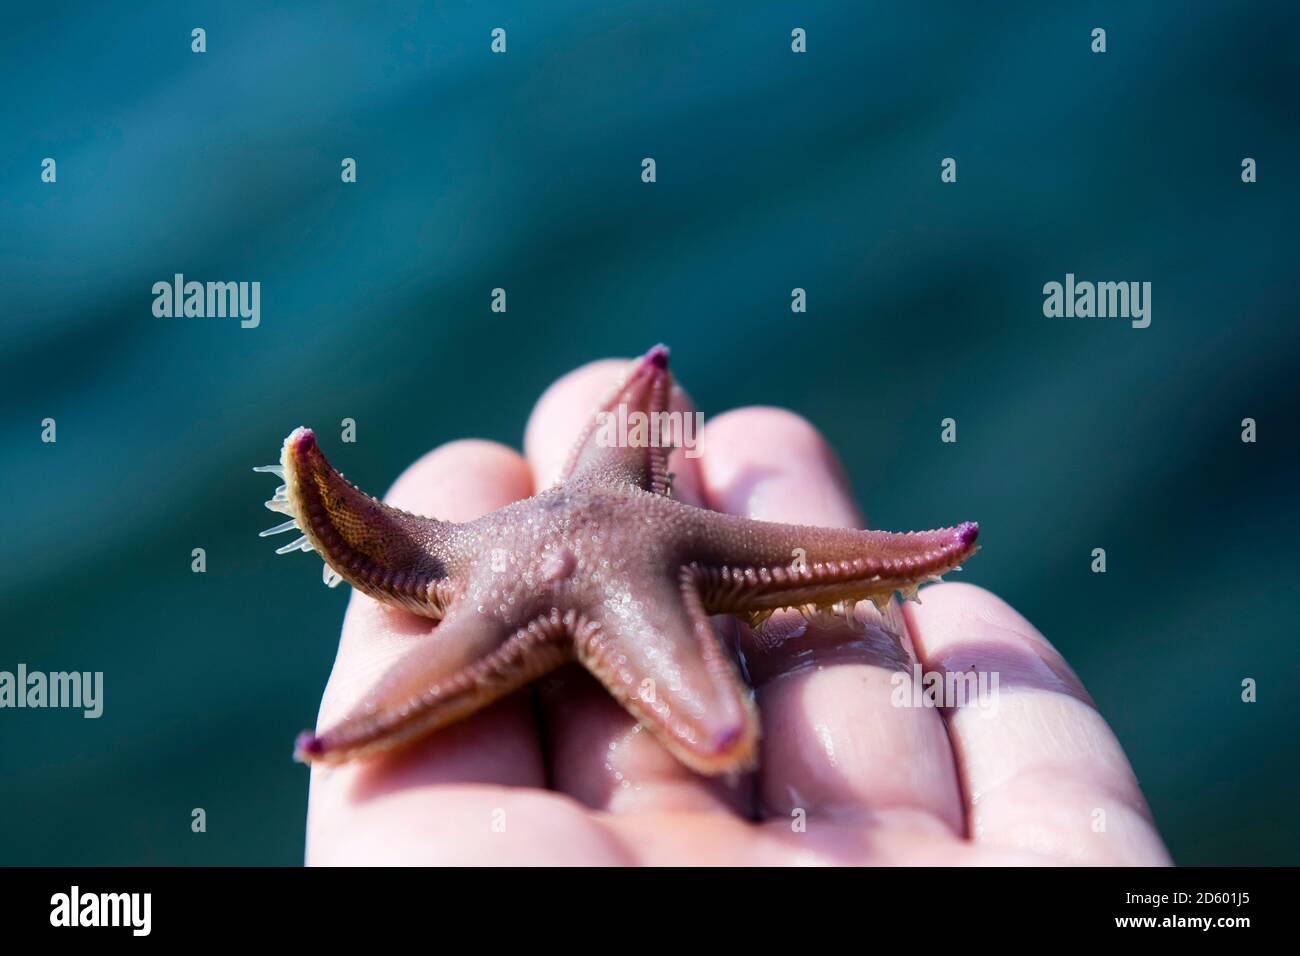 Norway, starfish in hand Stock Photo